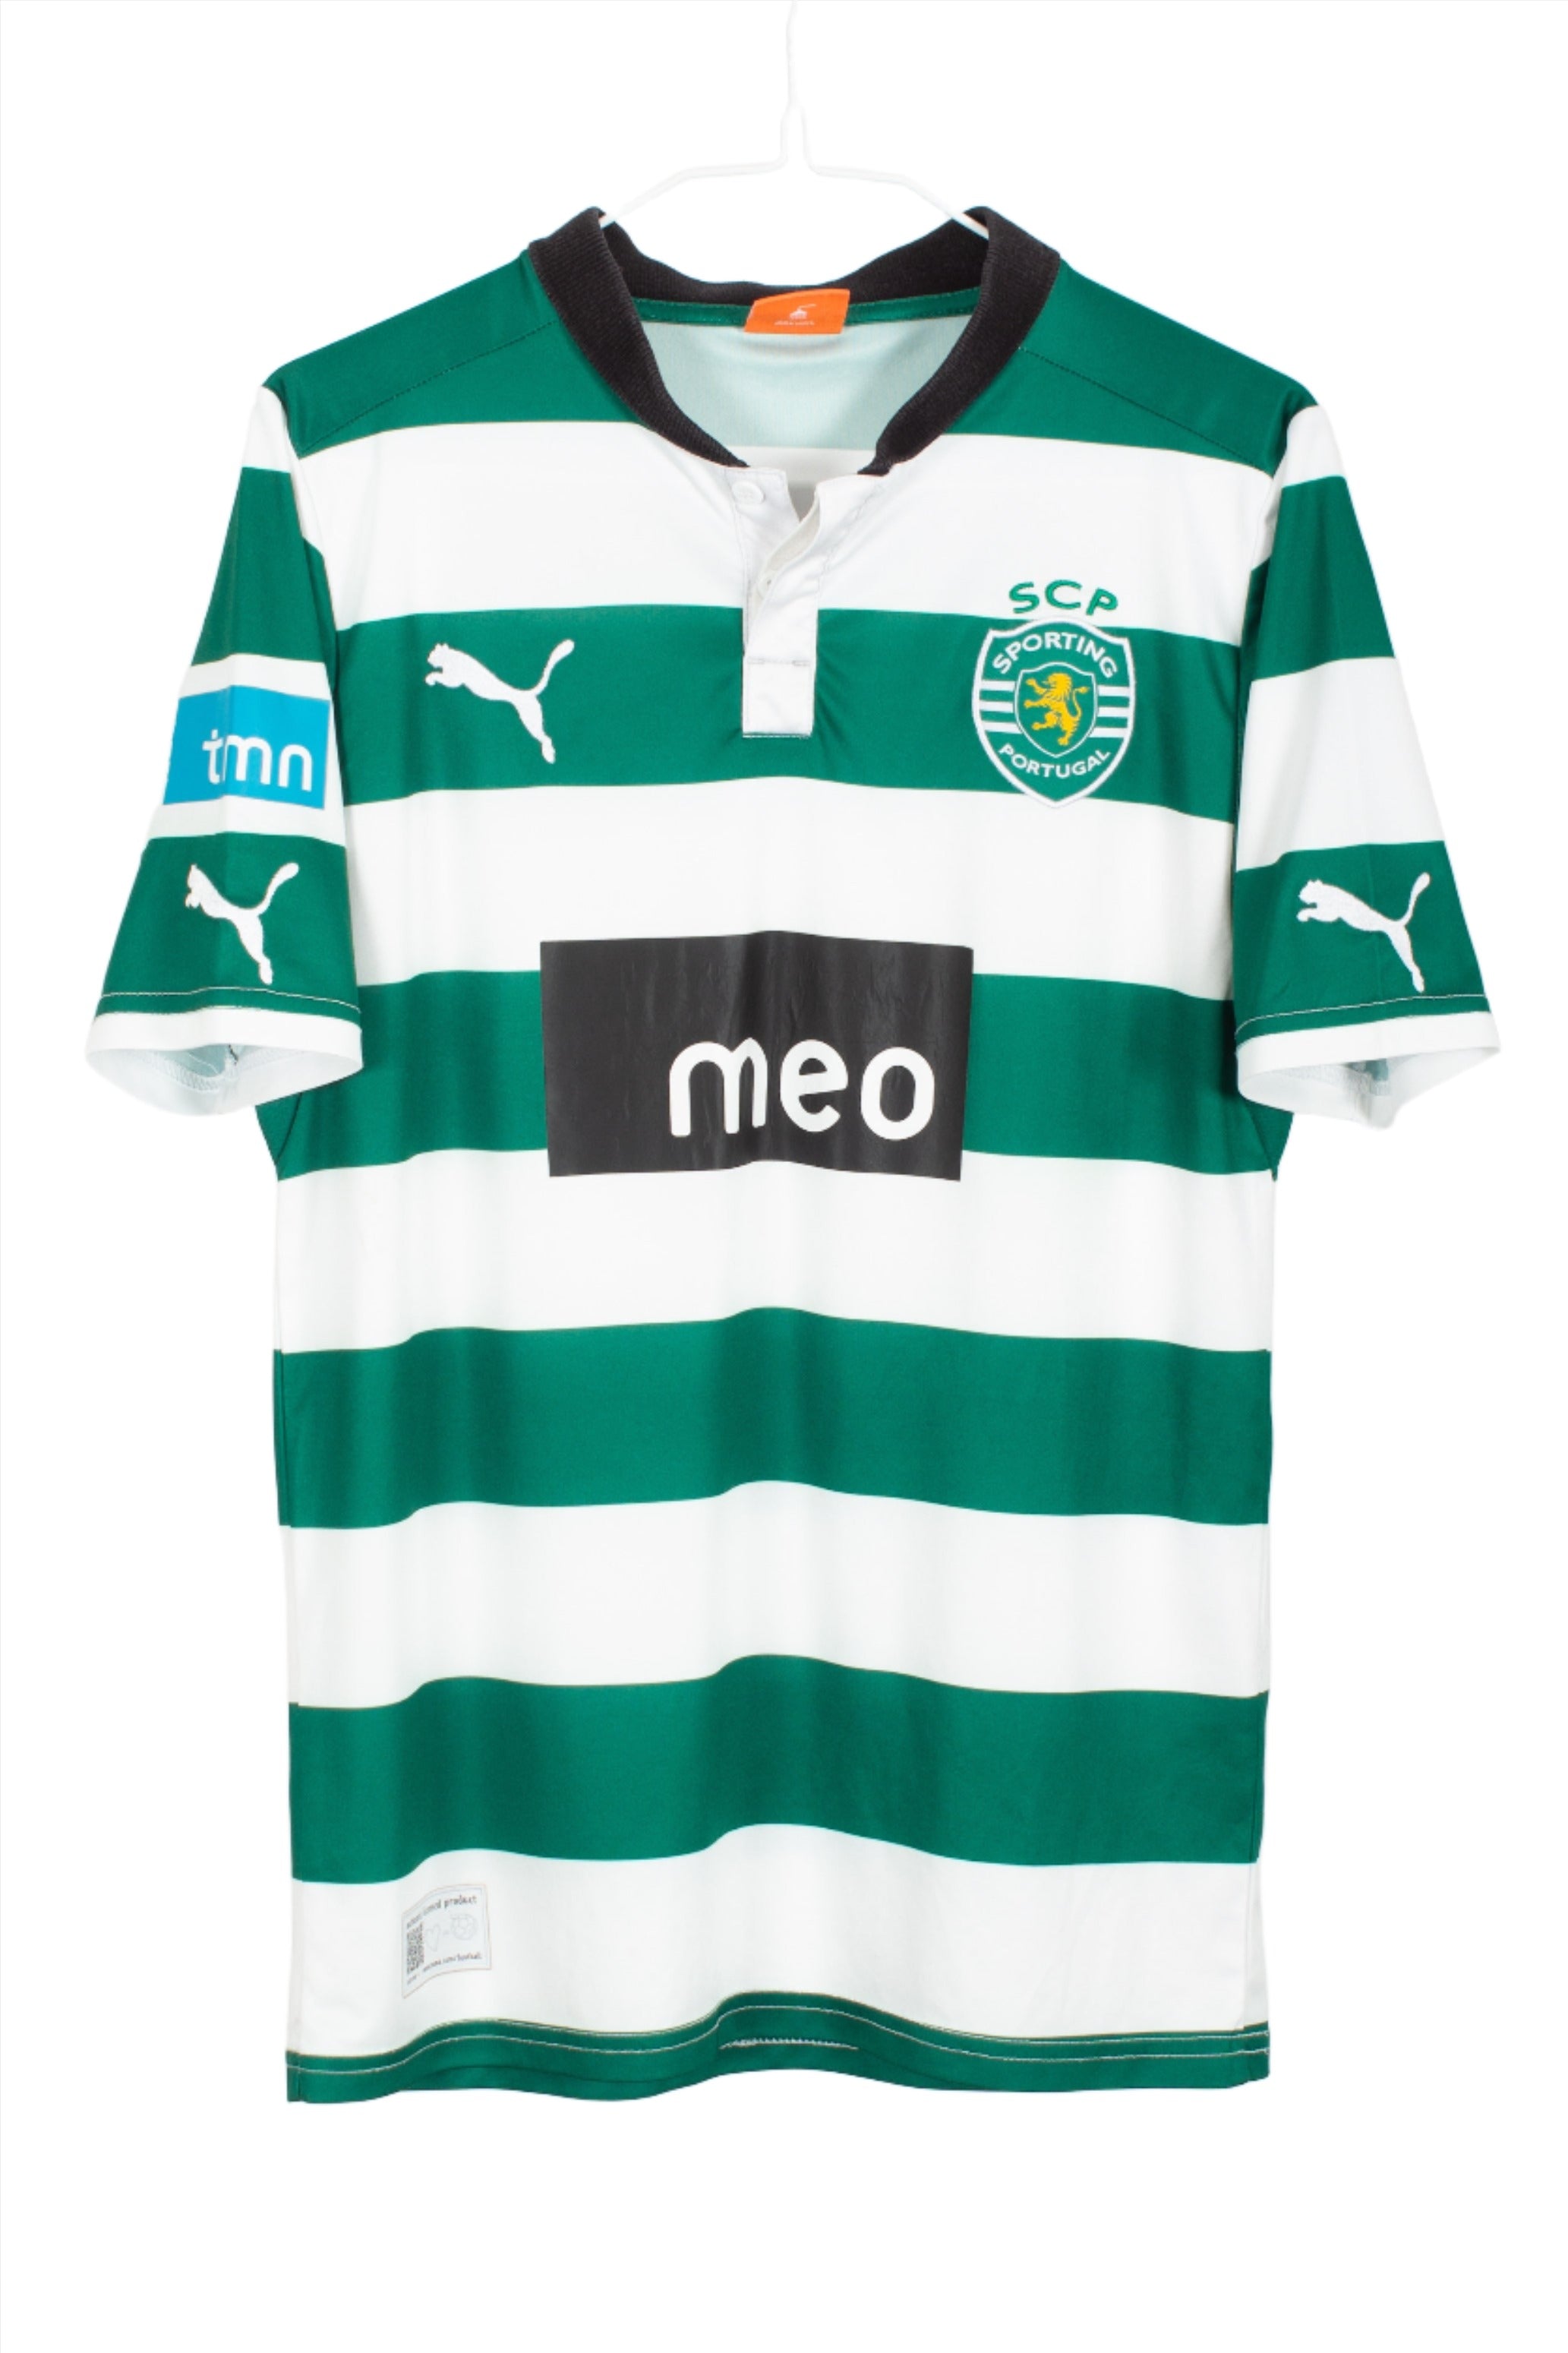 Kids Sporting CP (Sporting Lisbon) 2012/13 Home Shirt